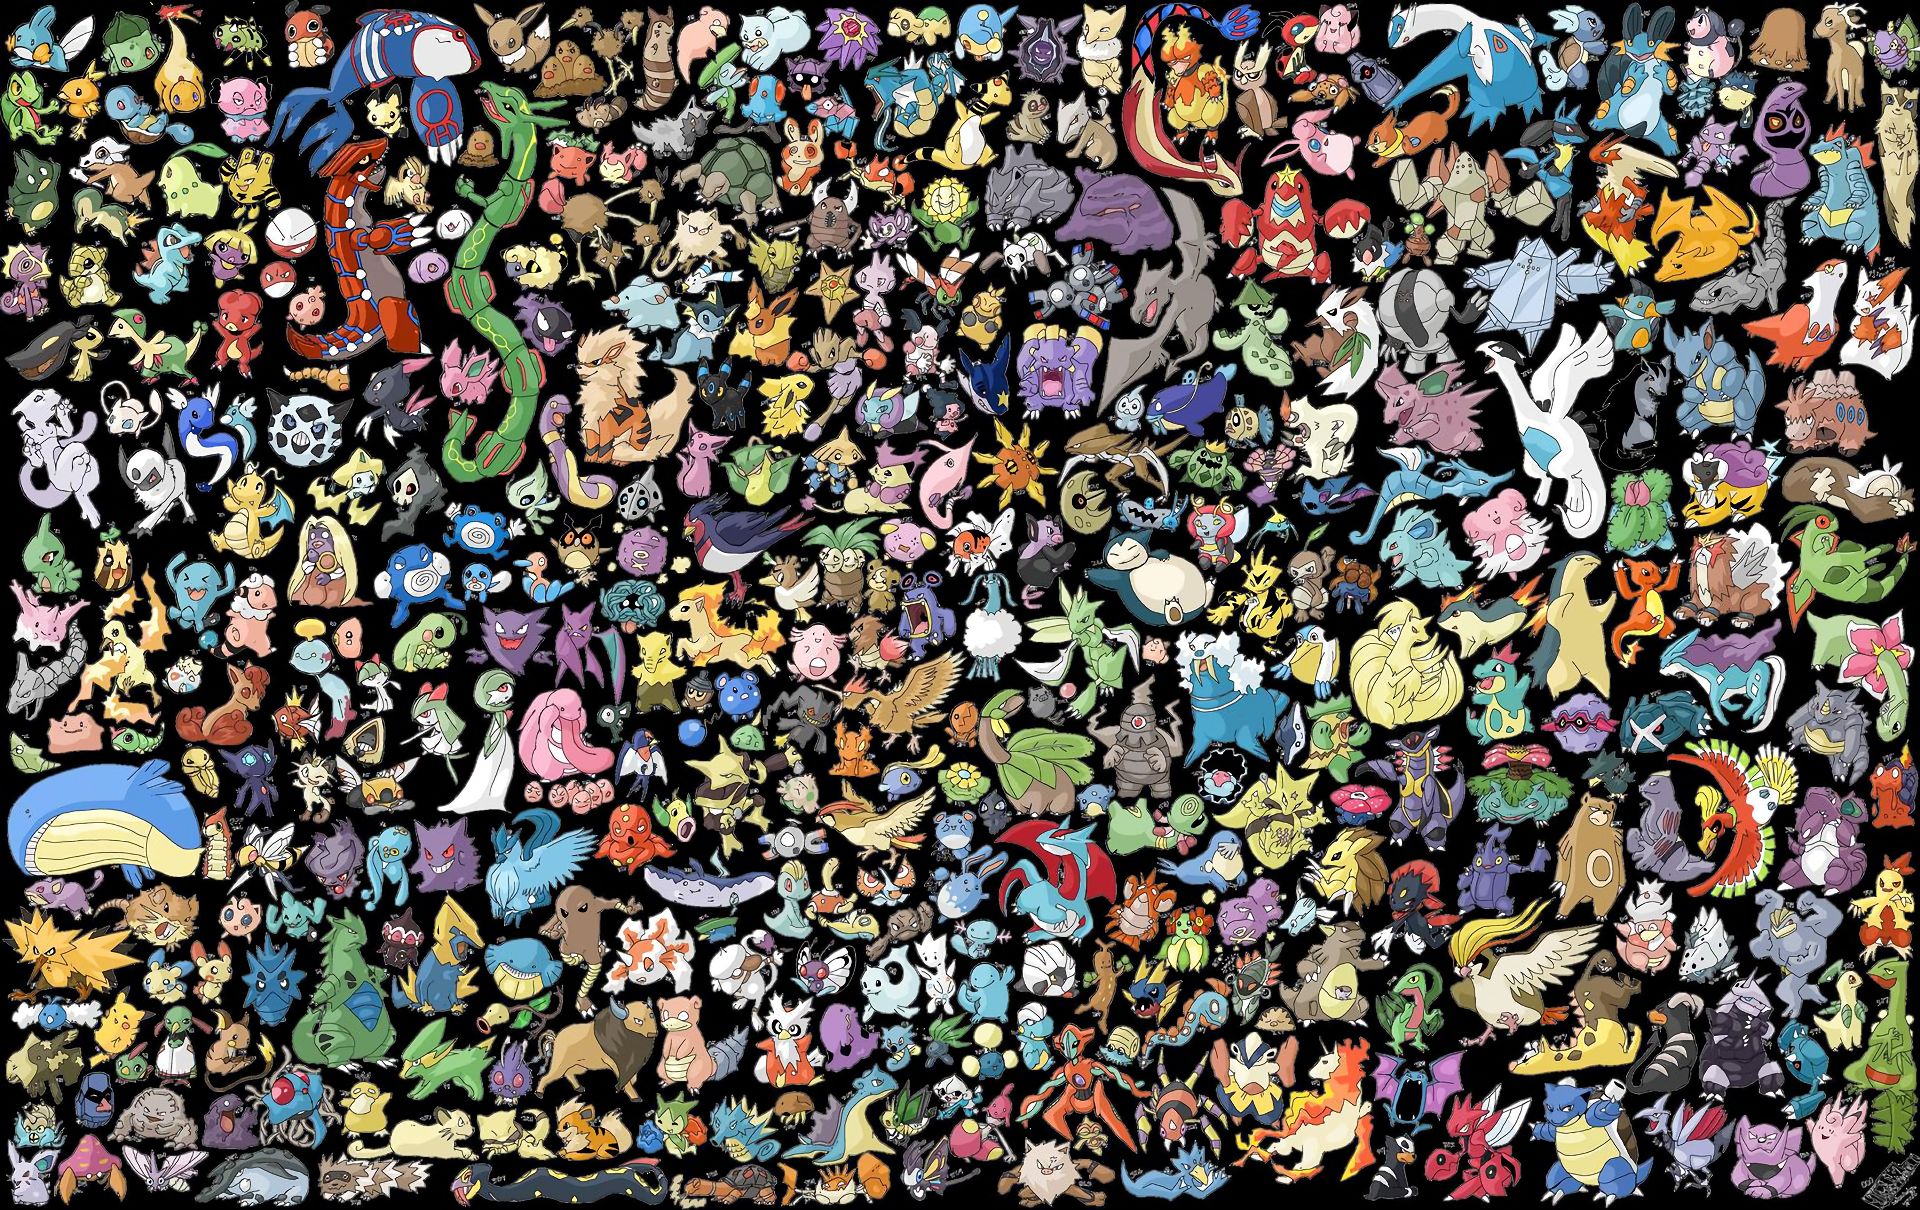 272044 descargar fondo de pantalla pokémon, psyduck (pokémon), abra (pokémon), pikachu, growlithe (pokémon), animado, aerodáctilo (pokémon), alakazam (pokémon), arbok (pokémon), arcanine (pokémon), articuno (pokémon), beedrill (pokémon), bellsprout (pokémon), blastoise (pokémon), bulbasaur (pokémon), butterfree (pokémon), caterpie (pokémon), chansey (pokémon), charizard (pokémon), charmander (pokémon), charmeleon (pokémon), clefable (pokémon), clefairy (pokémon), cloyster (pokémon), cubone (pokémon), dewgong (pokémon), diglett (pokémon), ídem (pokémon), dodrio (pokémon), doduo (pokémon), dragonair (pokémon), dragonite (pokémon), dratini (pokémon), drowzee (pokémon), dugtrio (pokémon), eevee (pokémon), ekans (pokémon), electabuzz (pokémon), electrodo (pokémon), exeggcute (pokémon), exeggutor (pokémon), farfetch´d (pokémon), fearow (pokémon), flareon (pokémon), gastly (pokémon), gengar (pokémon), geodude (pokémon), penumbra (pokémon), golbat (pokémon), dorado (pokémon), golduck (pokémon), golem (pokémon), graveler (pokémon), grimer (pokémon), gyarados (pokémon), haunter (pokémon), hitmonchan (pokémon), hitmonlee (pokémon), horsea (pokémon), hipno (pokémon), ivysaur (pokémon), jigglypuff (pokémon), jolteon (pokémon), jynx (pokémon), kabuto (pokémon), kabutops (pokémon), kadabra (pokémon), kakuna (pokémon), kangaskhan (pokémon), kingler (pokémon), koffing (pokémon), krabby (pokémon), lapras (pokémon), lickitung (pokémon), machamp (pokémon), machoke (pokémon), machop (pokémon), magikarp (pokémon), magmar (pokémon), magnemita (pokémon), magneton (pokémon), mankey (pokémon), marowak (pokémon), meowth (pokémon), metápodo (pokémon), mew (pokémon), mewtwo (pokémon), moltres (pokémon), mr mime (pokémon), muk (pokémon), nidoking (pokémon), nidoqueen (pokémon), nidoran (pokémon), nidorina (pokémon), nidorino (pokémon), ninetales (pokémon), extraño (pokémon), omanite (pokémon), omastar (pokémon), onix (pokémon), paras (pokémon), parasect (pokémon), persa (pokémon), pidgeot (pokémon), pidgeotto (pokémon), pidgey (pokémon), pinsir (pokémon), poliwag (pokémon), poliwhirl (pokémon), poliwrath (pokémon), ponyta (pokémon), porygon (pokémon), primeape (pokémon), raichu (pokémon), rapidash (pokémon), raticate (pokémon), rattata (pokémon), rydon (pokémon), rhyhorn (pokémon), sandshrew (pokémon), sandslash (pokémon), scyther (pokémon), seadra (pokémon), seaking (pokémon), seel (pokémon), shellder (pokémon), slowbro (pokémon), lentitud (pokémon), snorlax (pokémon), spearow (pokémon), squirtle (pokémon), starmie (pokémon), staryu (pokémon), tangela (pokémon), tauros (pokémon), tentacool (pokémon), tentacruel (pokémon), vaporeon (pokémon), venomoth (pokémon), venonat (pokémon), venusaur (pokémon), victreebel (pokémon), vileplume (pokémon), voltorb (pokémon), vulpix (pokémon), wartortle (pokémon), weedle (pokémon), campanita (pokémon), weezing (pokémon), wigglytuff (pokémon), zapdos (pokémon), zubat (pokémon): protectores de pantalla e imágenes gratis